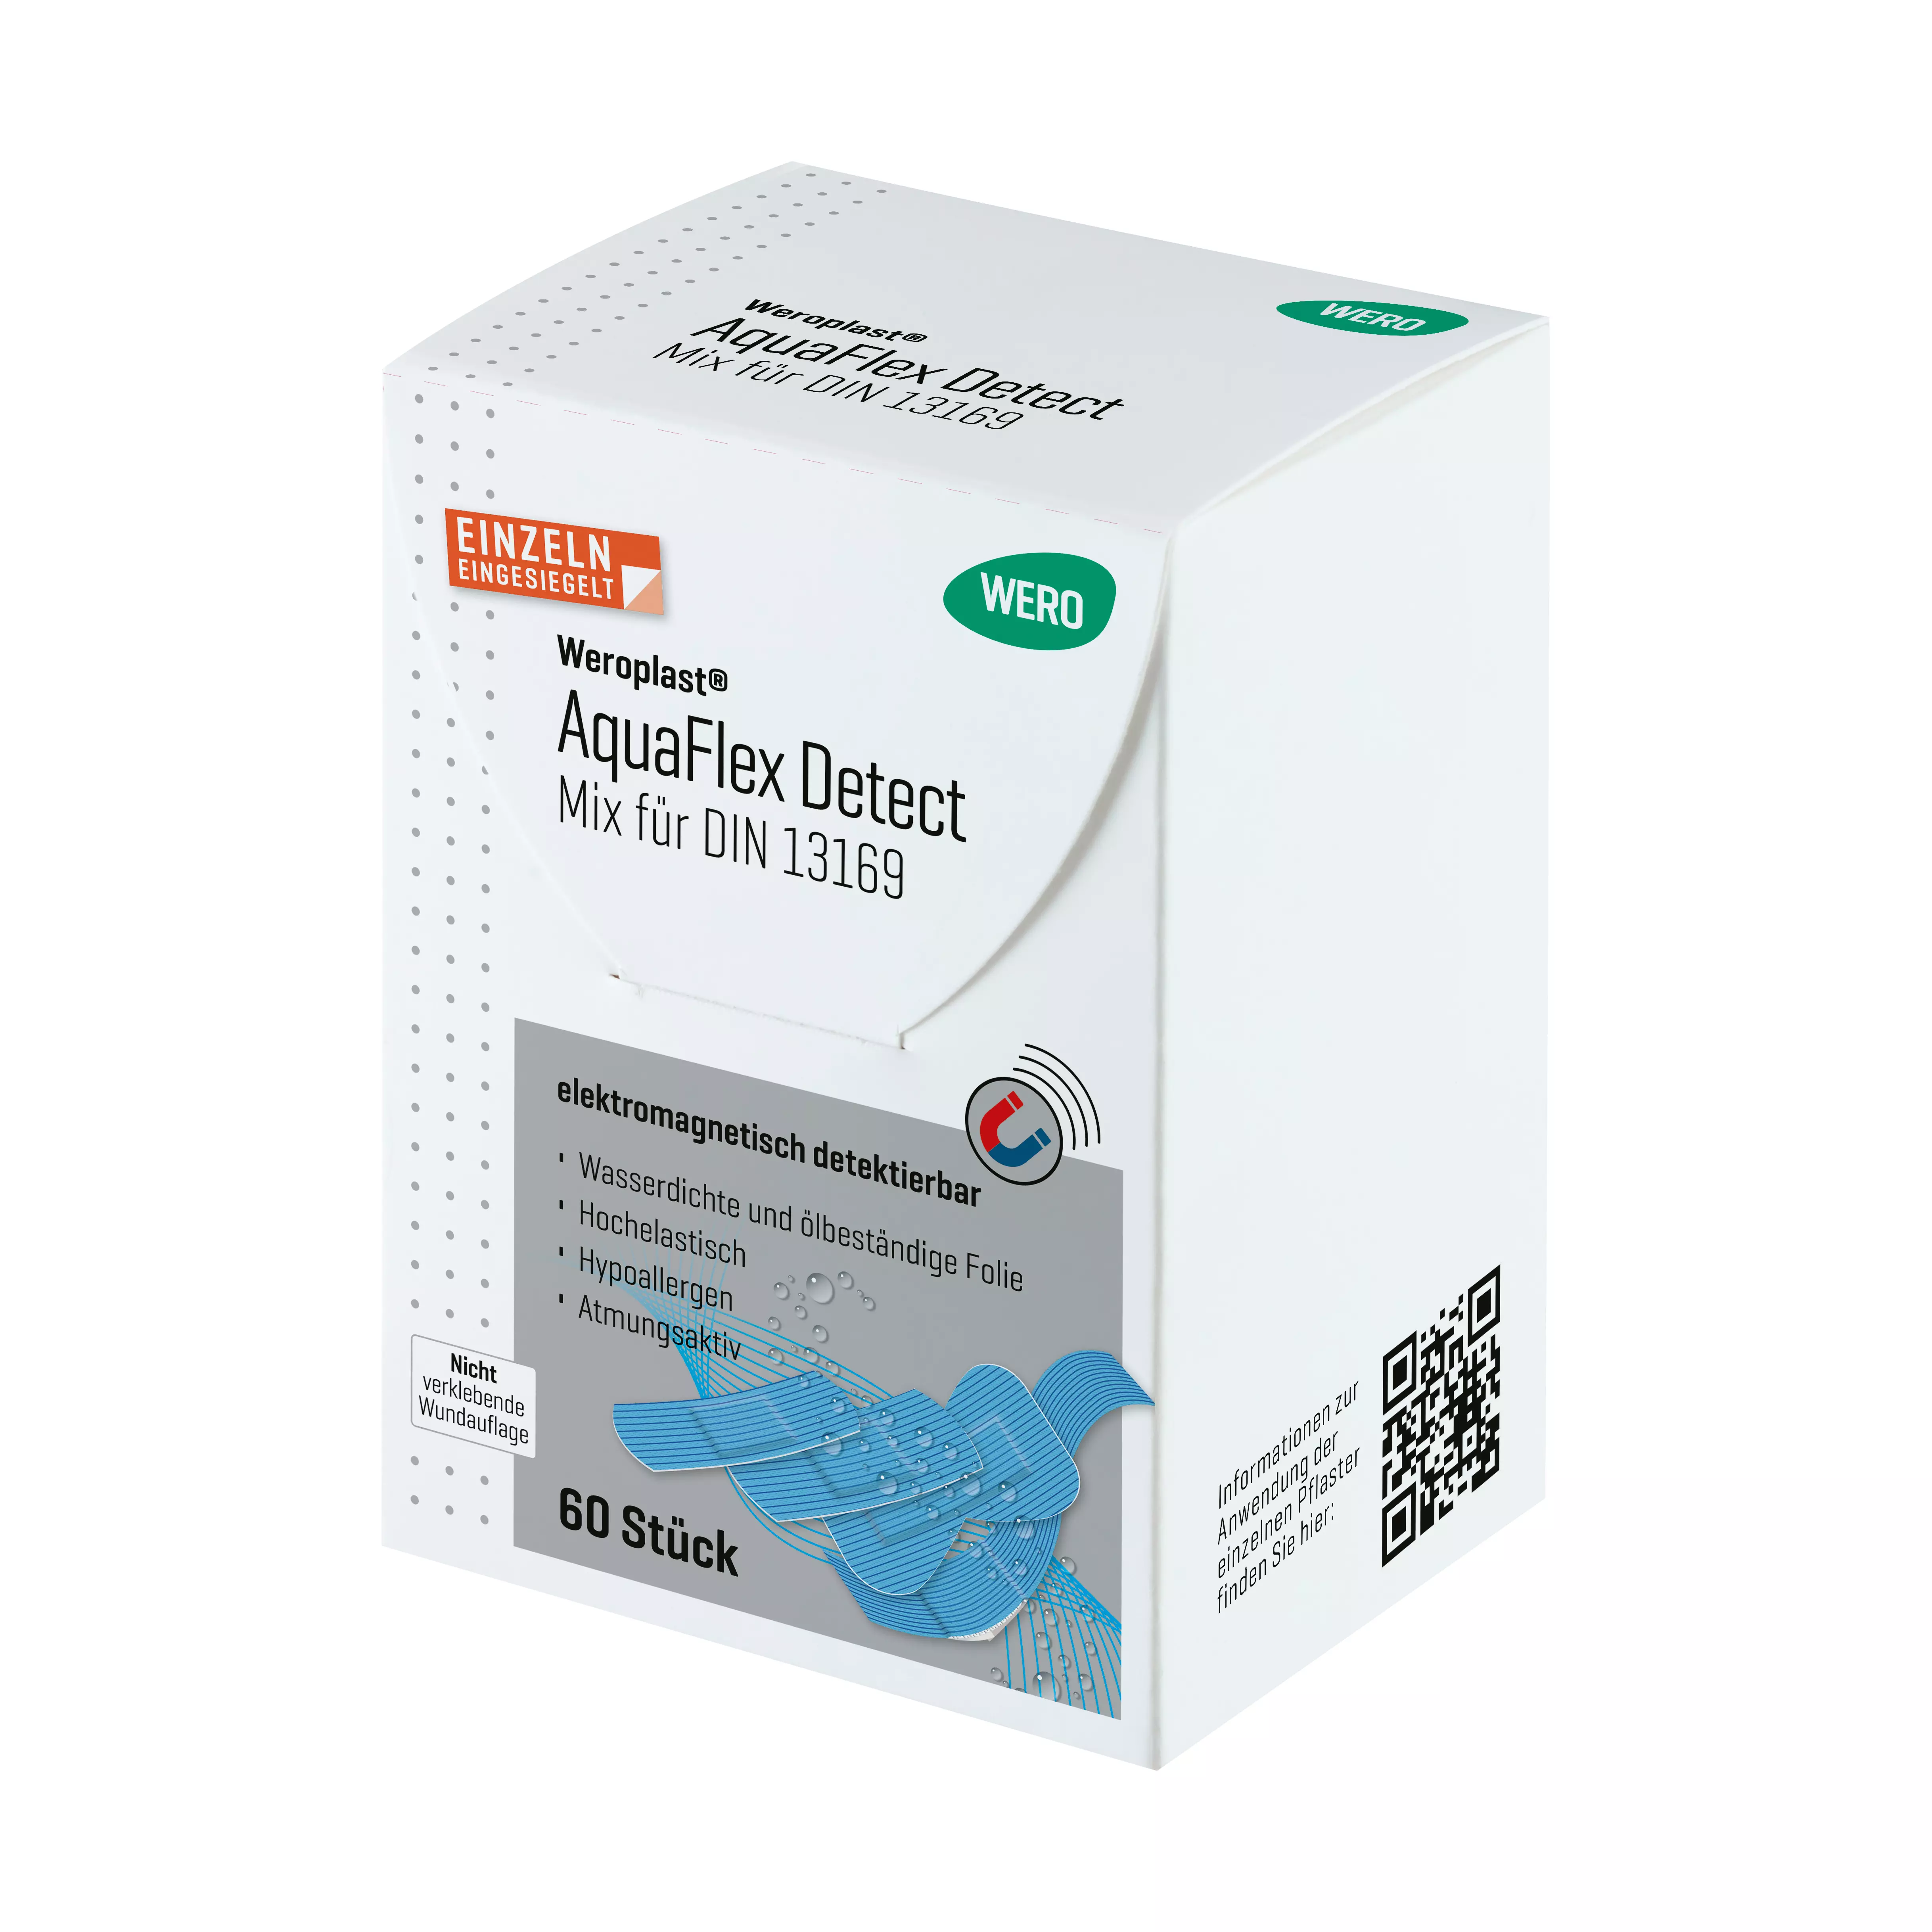 Weroplast® AquaFlex Detect plasters - Mix DIN 13169